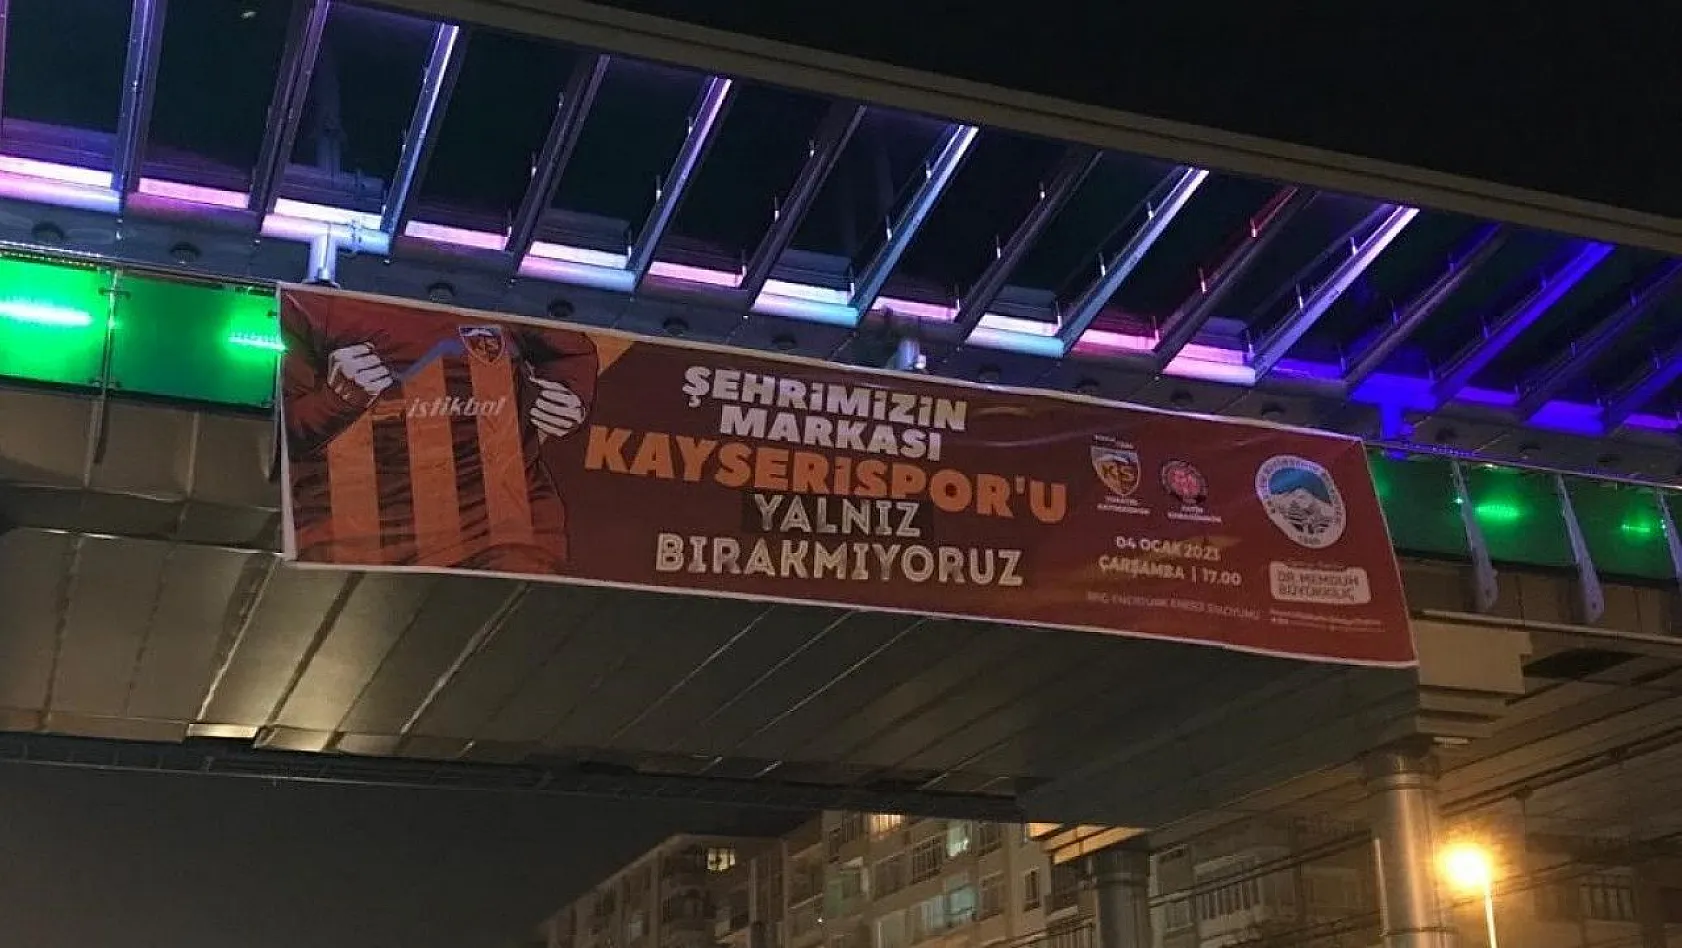 Kent merkezi Kayserispor pankartları ile donatıldı!